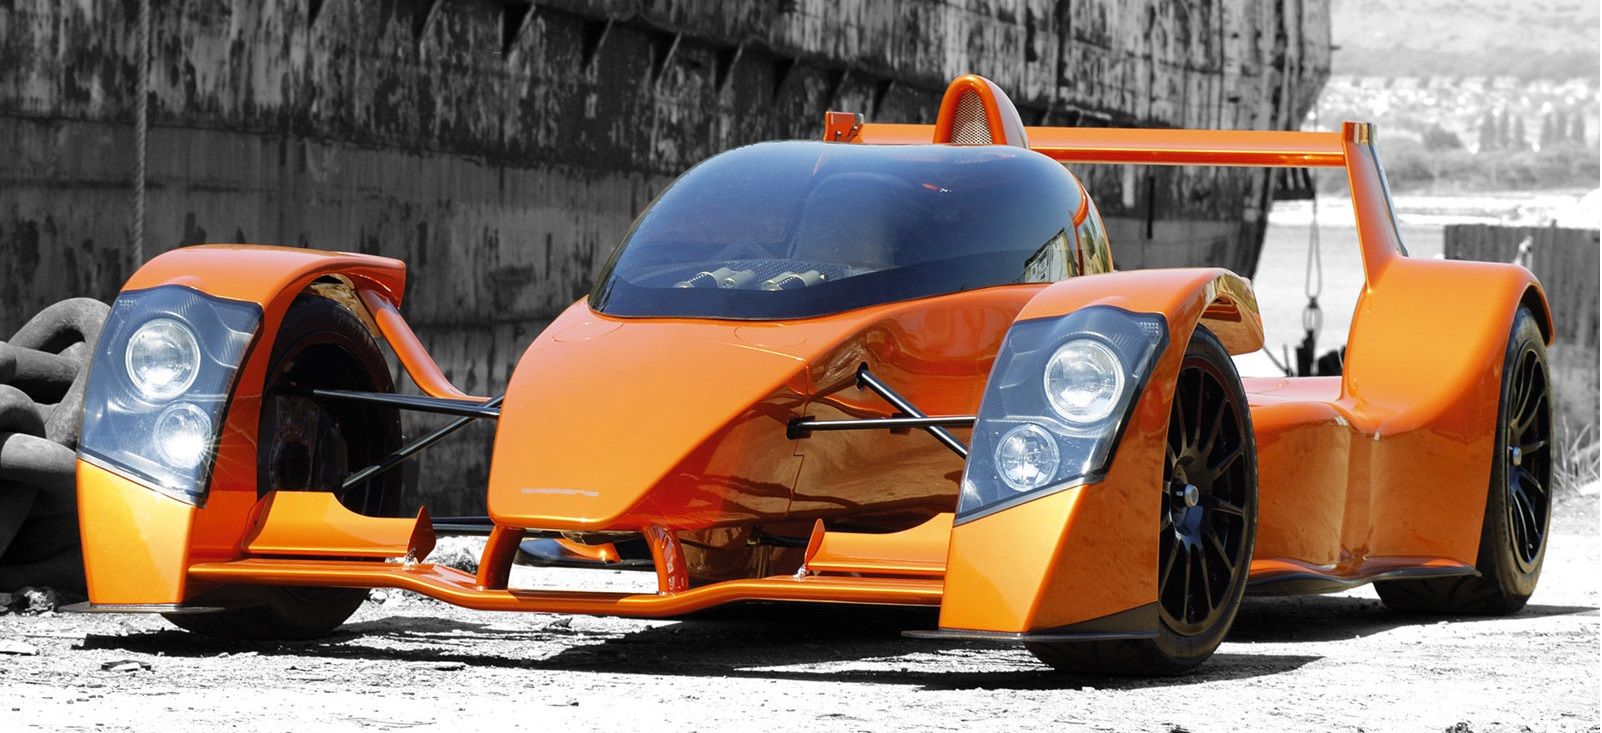 Orange Caparo T1 supercar parked